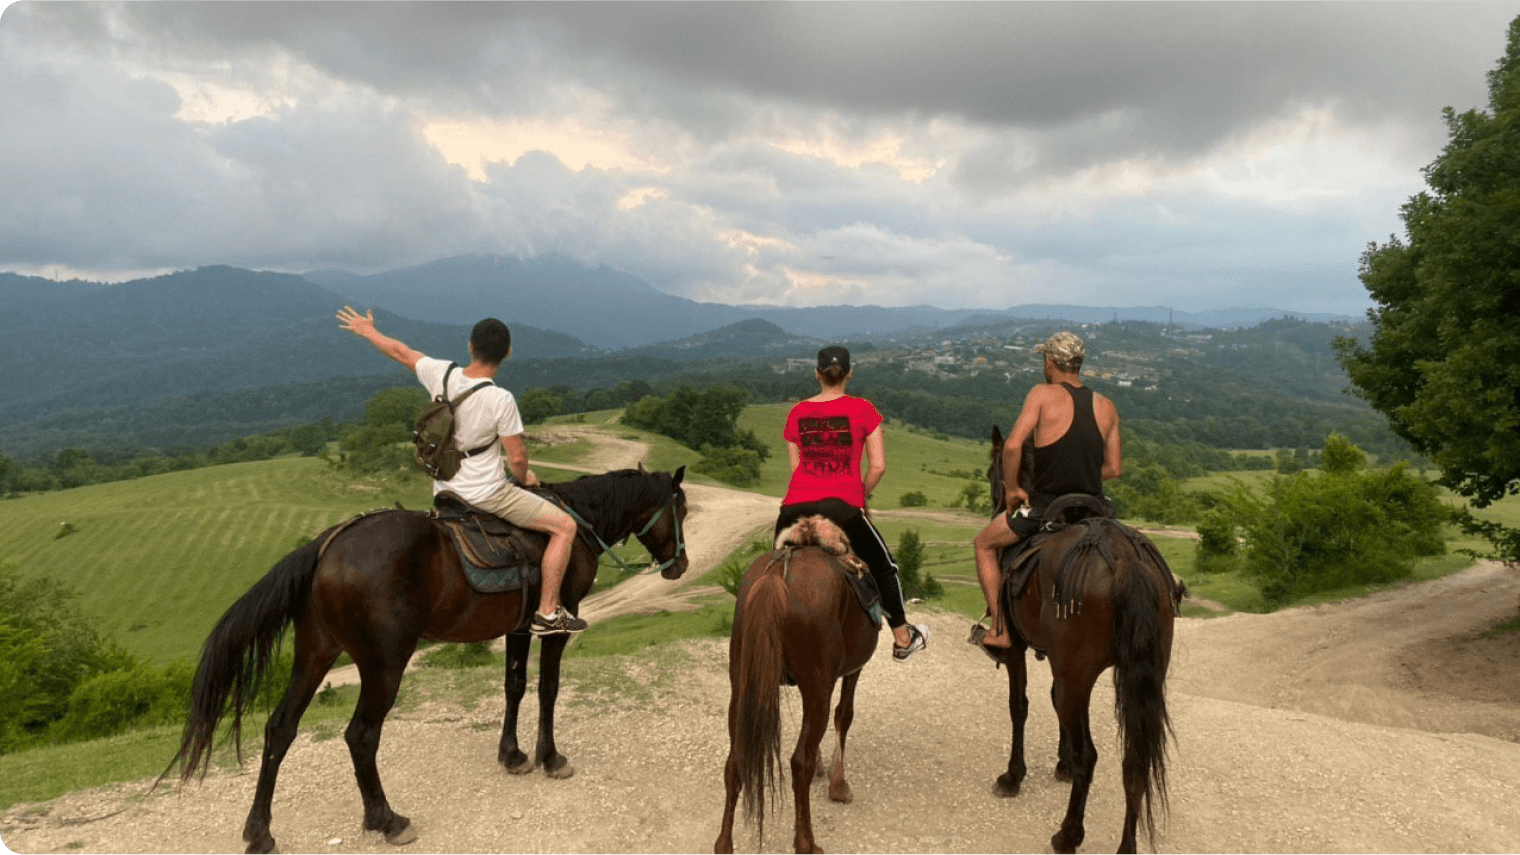 Лазурная Долина Сочи конные прогулки. Ольгинское ущелье Абхазия конные прогулки. Лазурная Долина Адлер конные прогулки. Абхазия конные прогулки в горах. Конные прогулки адлер